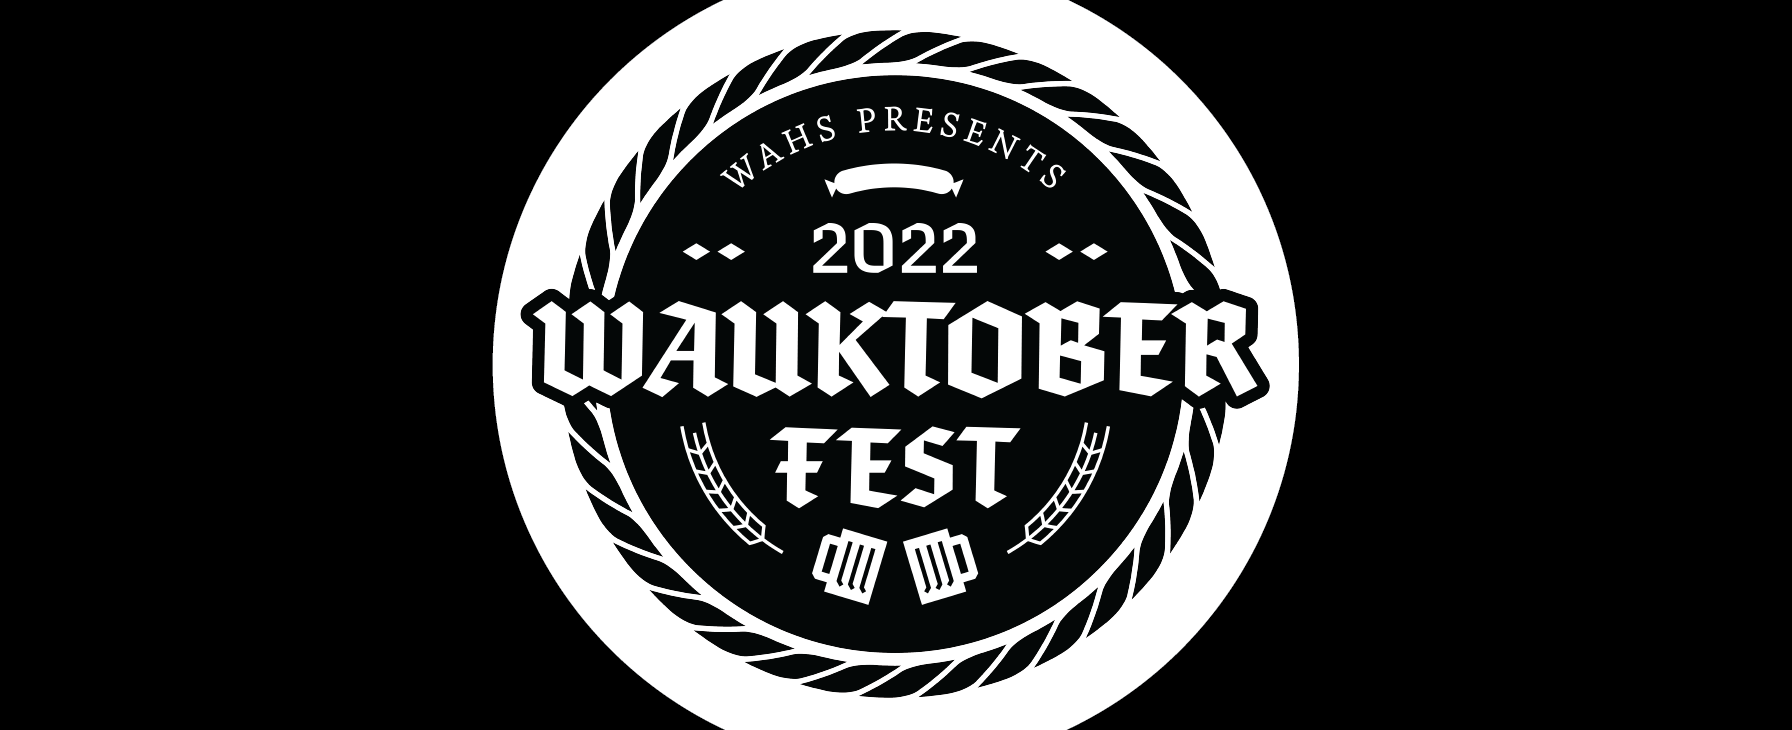 WAHS presents 2022 Wauktoberfest